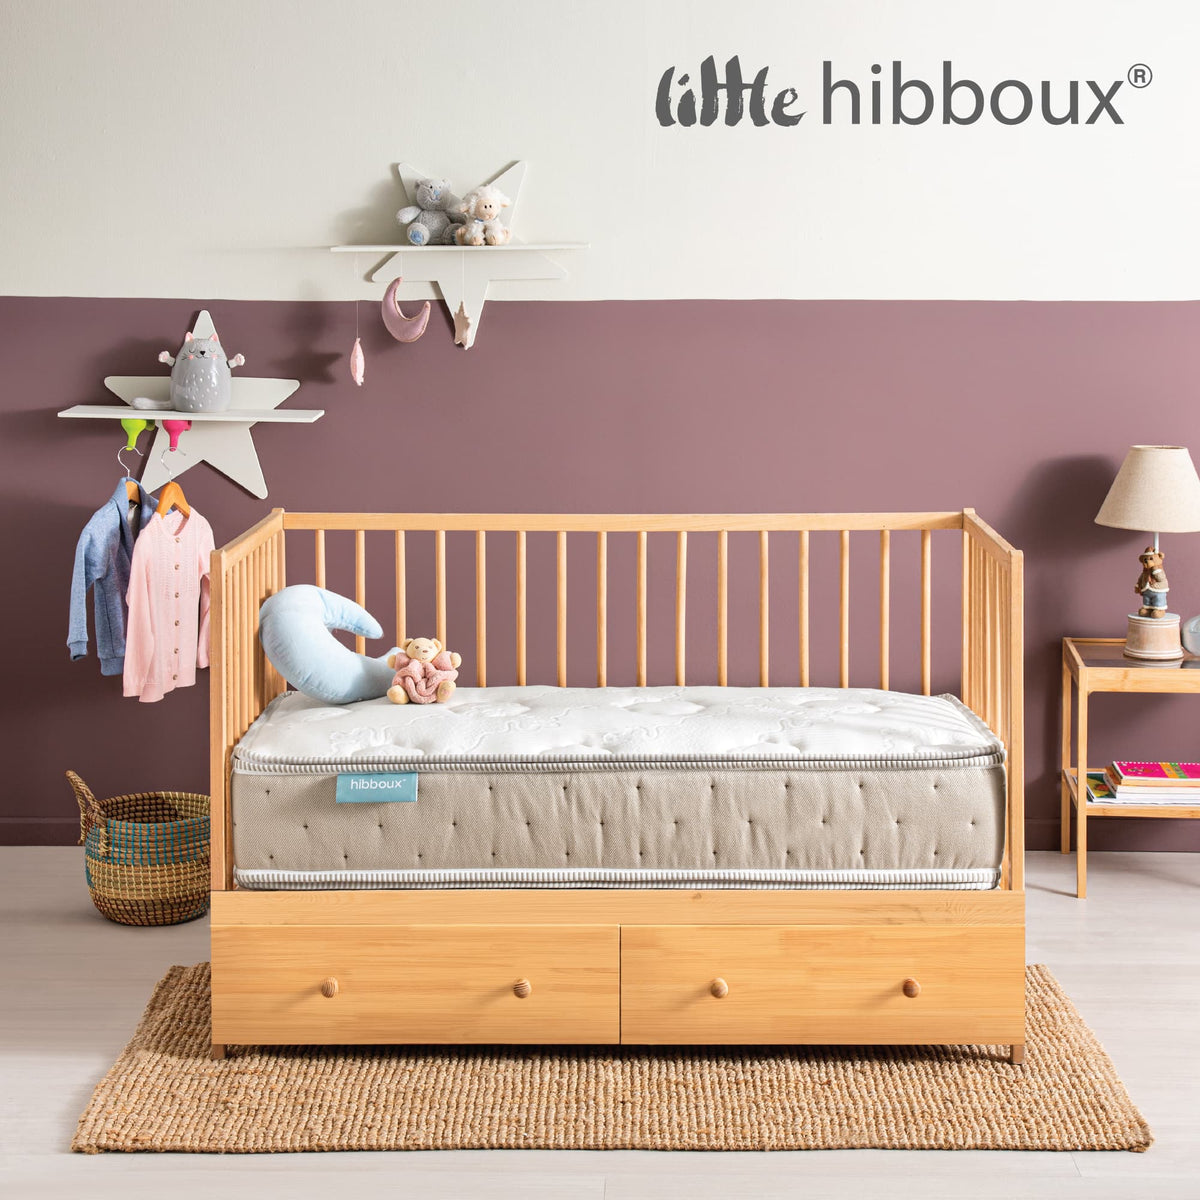 Çocuk Yatakları ve Bebek Yatak Fiyatları Hibboux